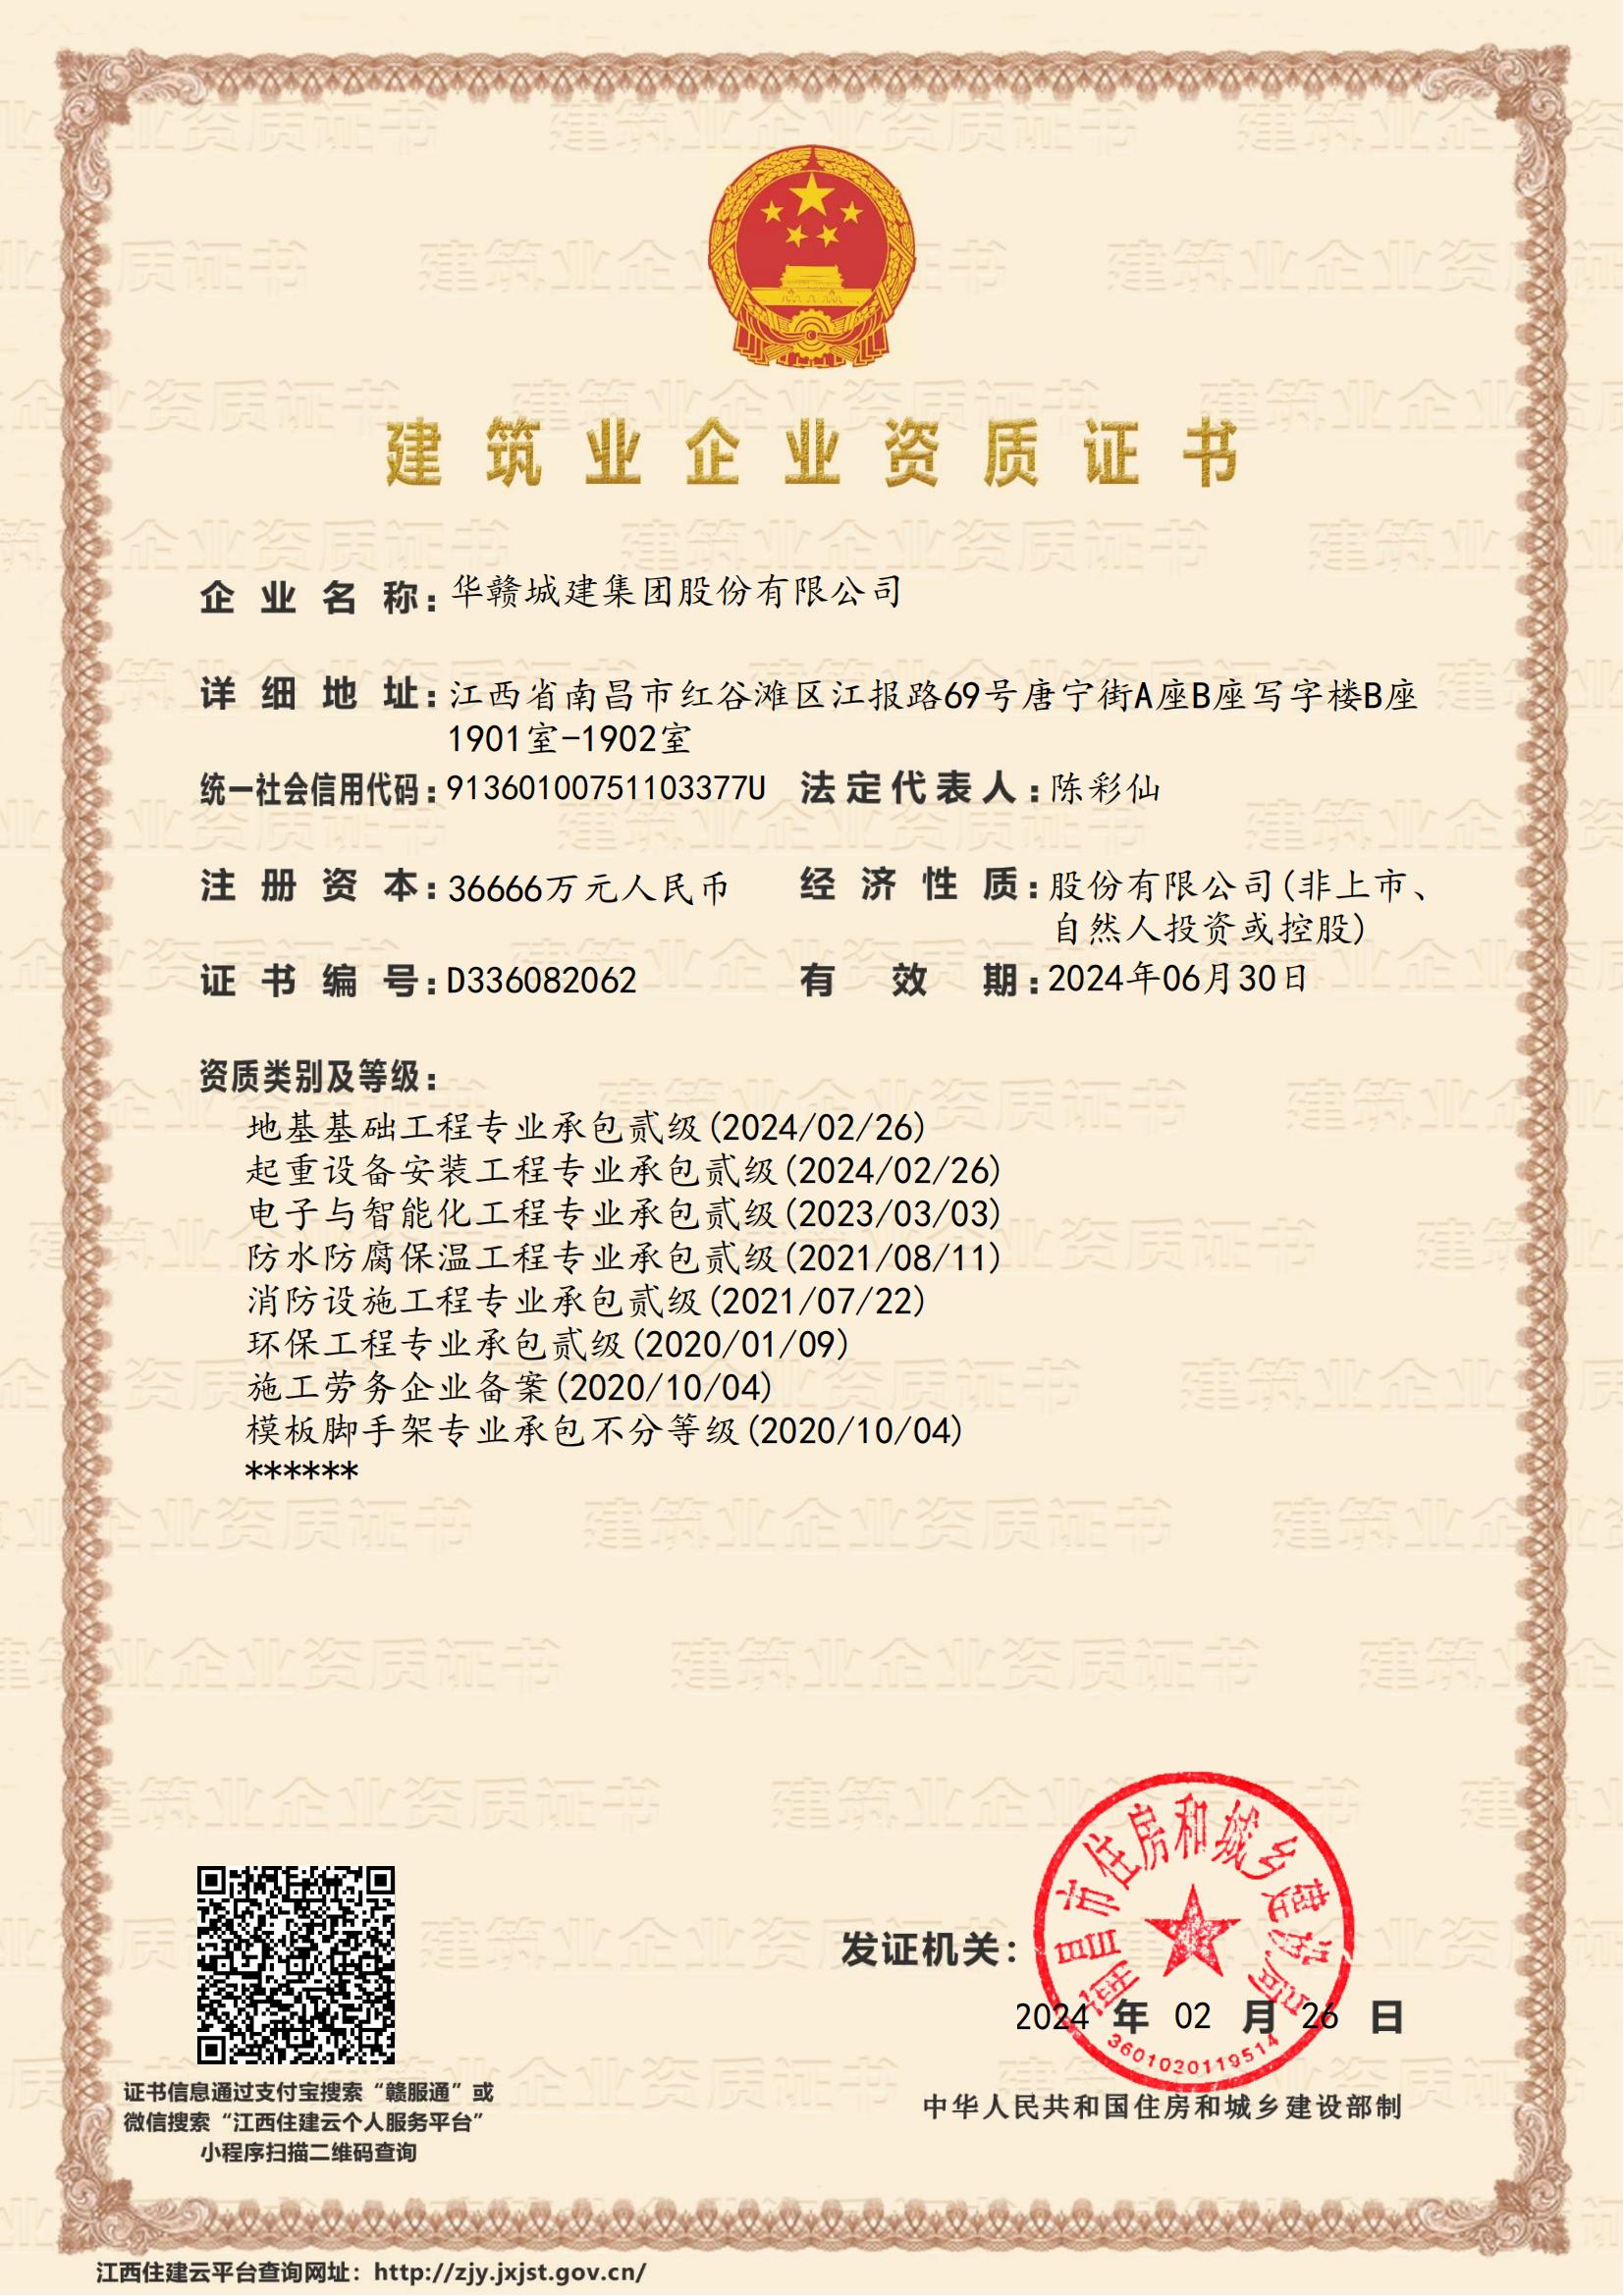 华赣城建集团股份有限公司-企业资质证书 (1)_00(1).jpg